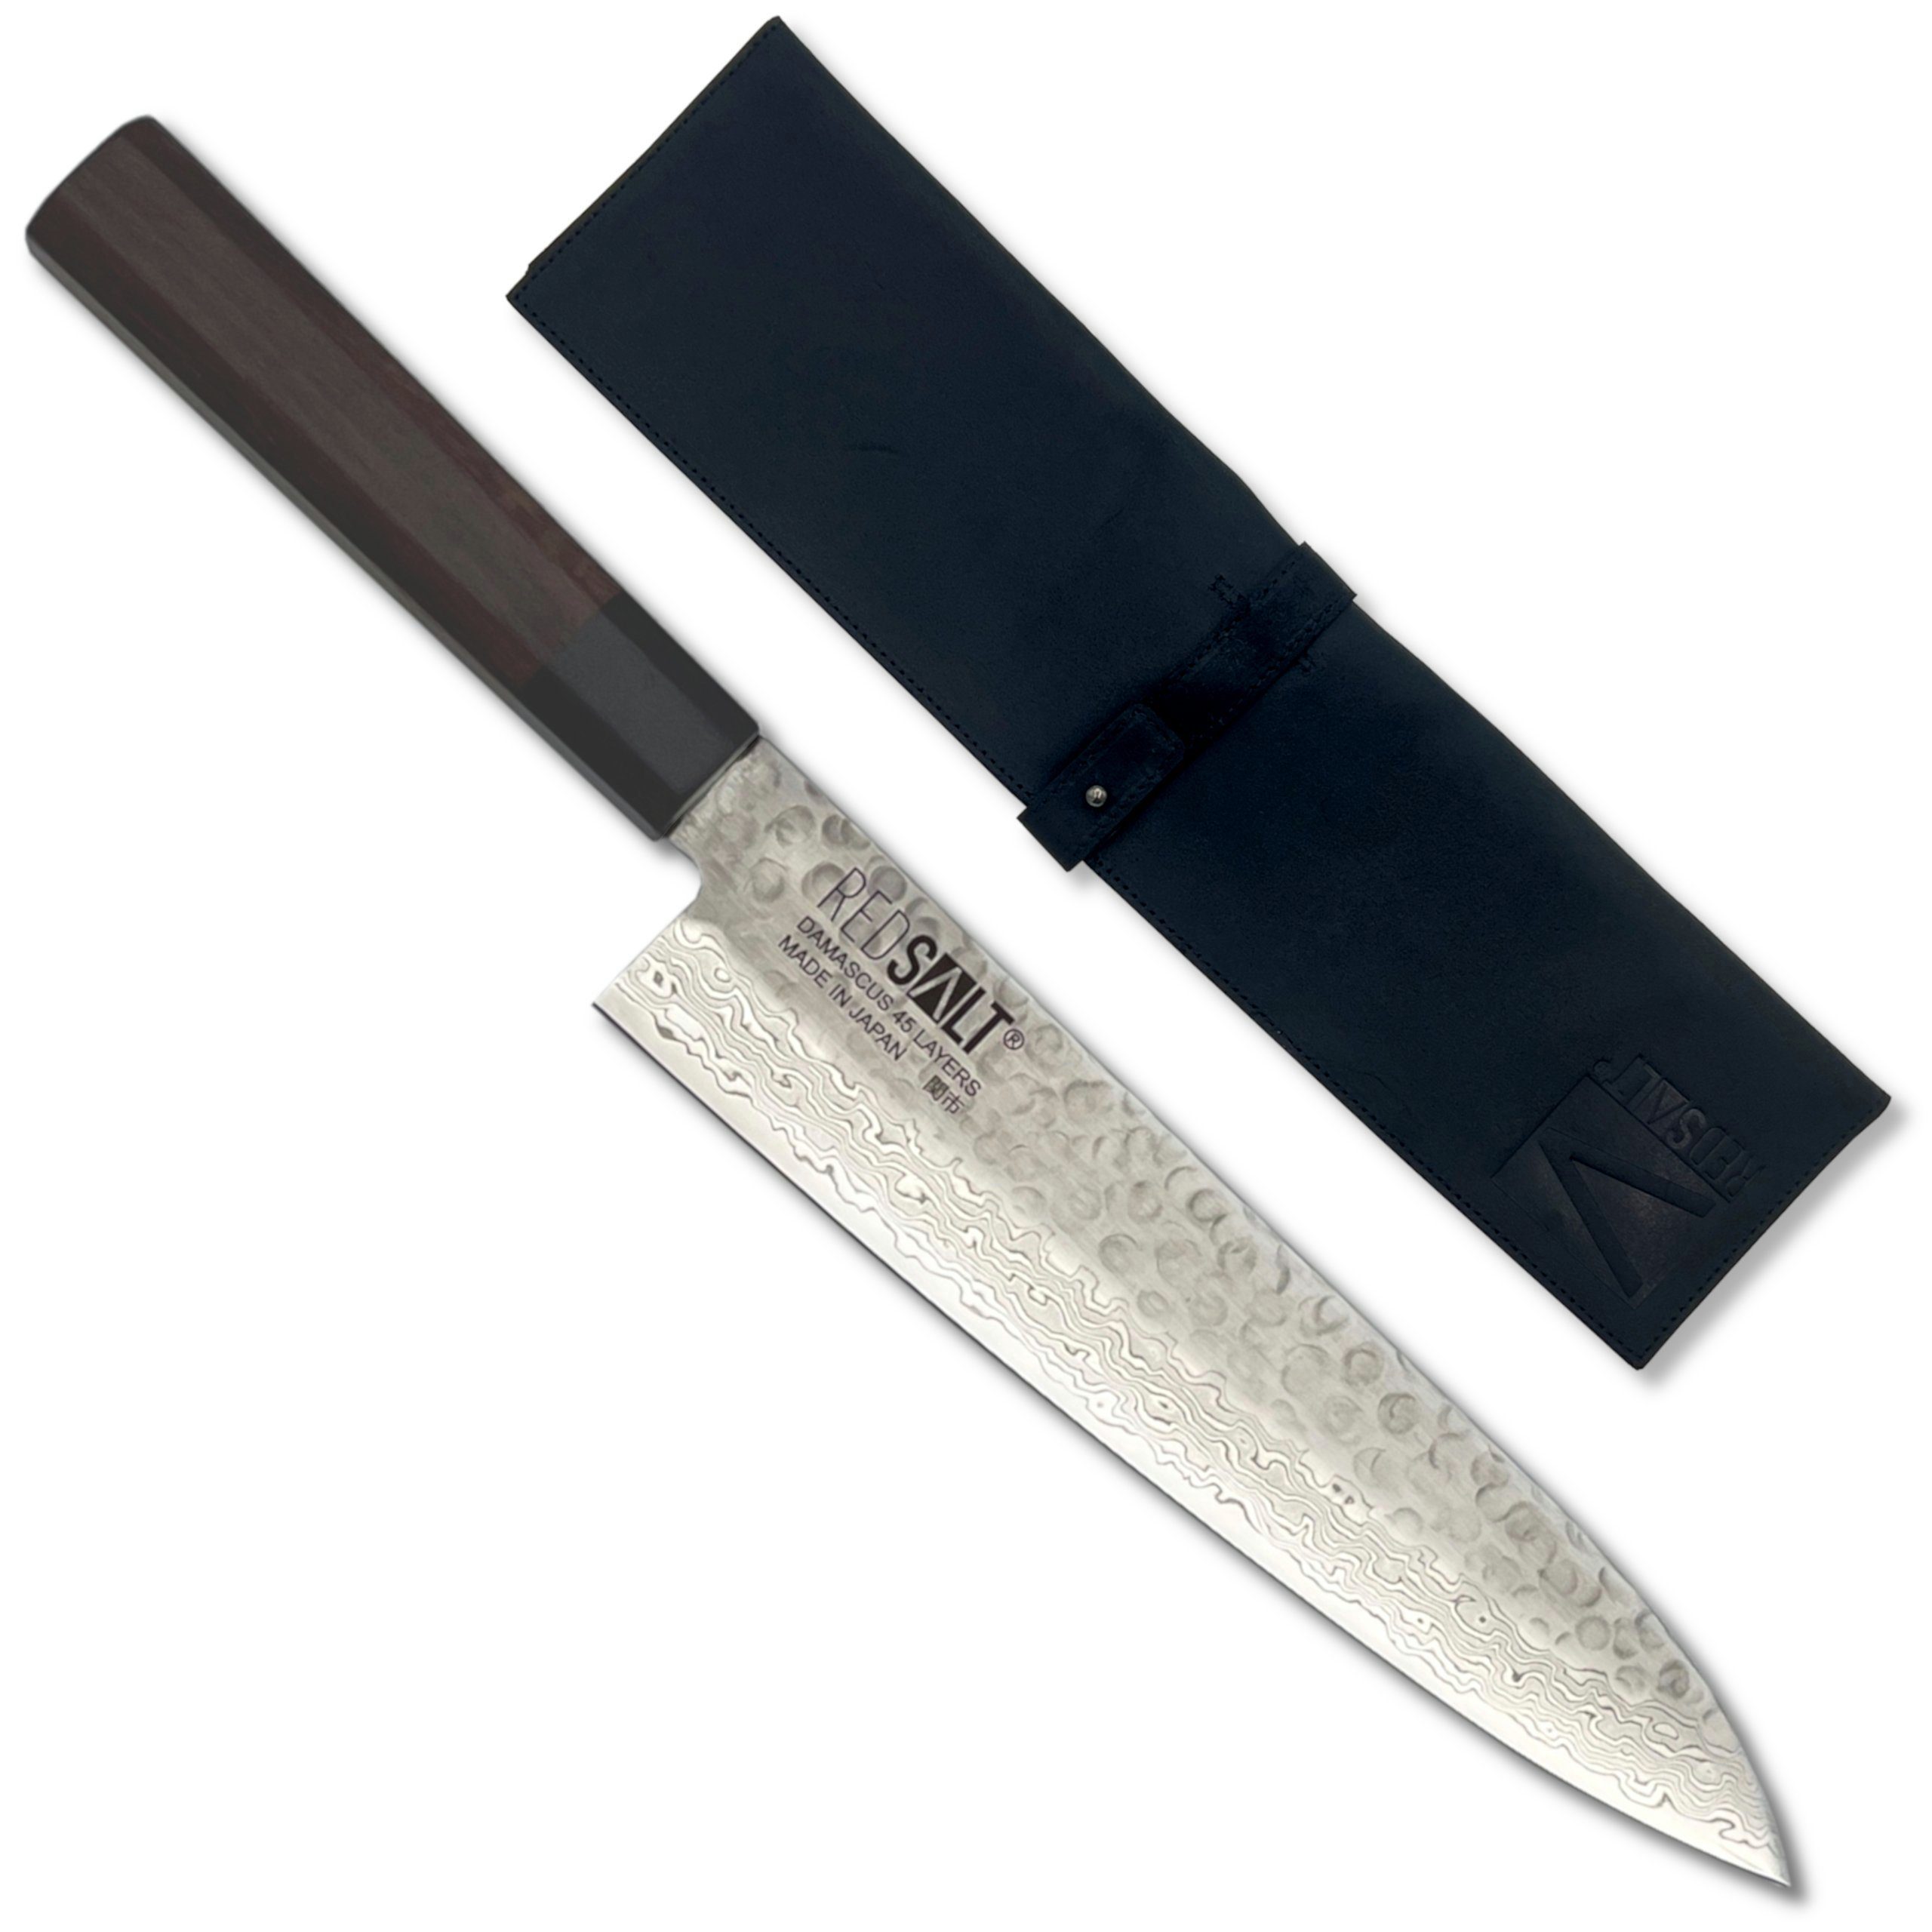 Profi & in GYUTO Küchenmesser mit 21cm Ledertasche handgerfertigt, Japan Damastmesser REDSALT® Made Klingenschutz,